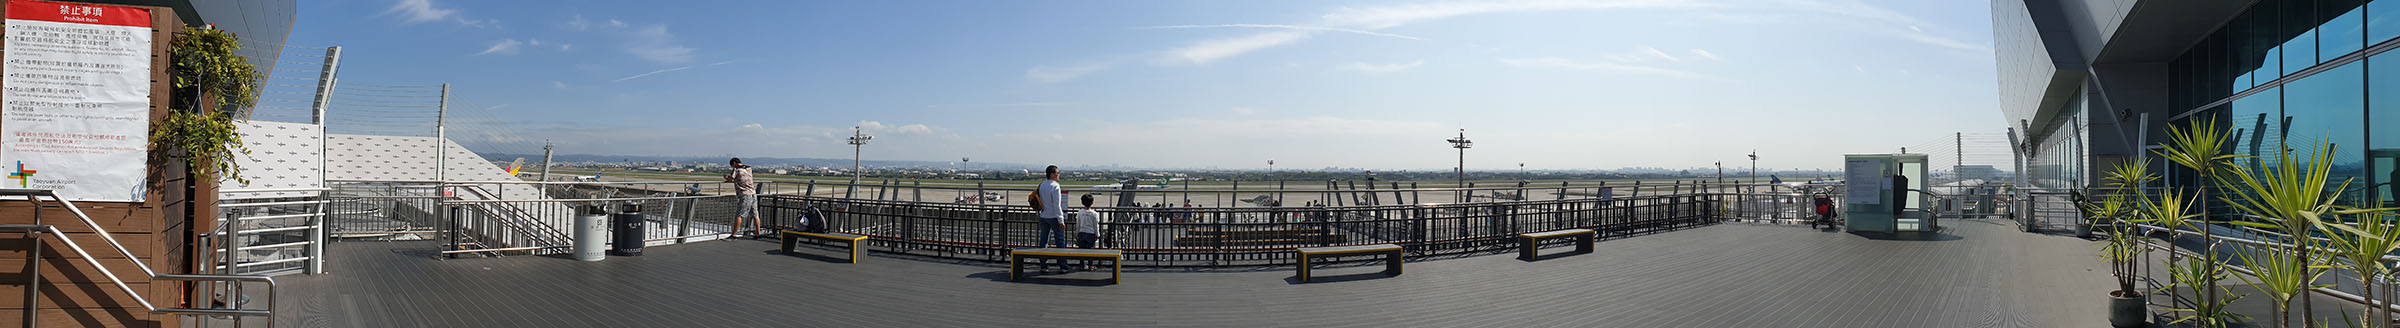 桃園機場觀景台上層全景攝影